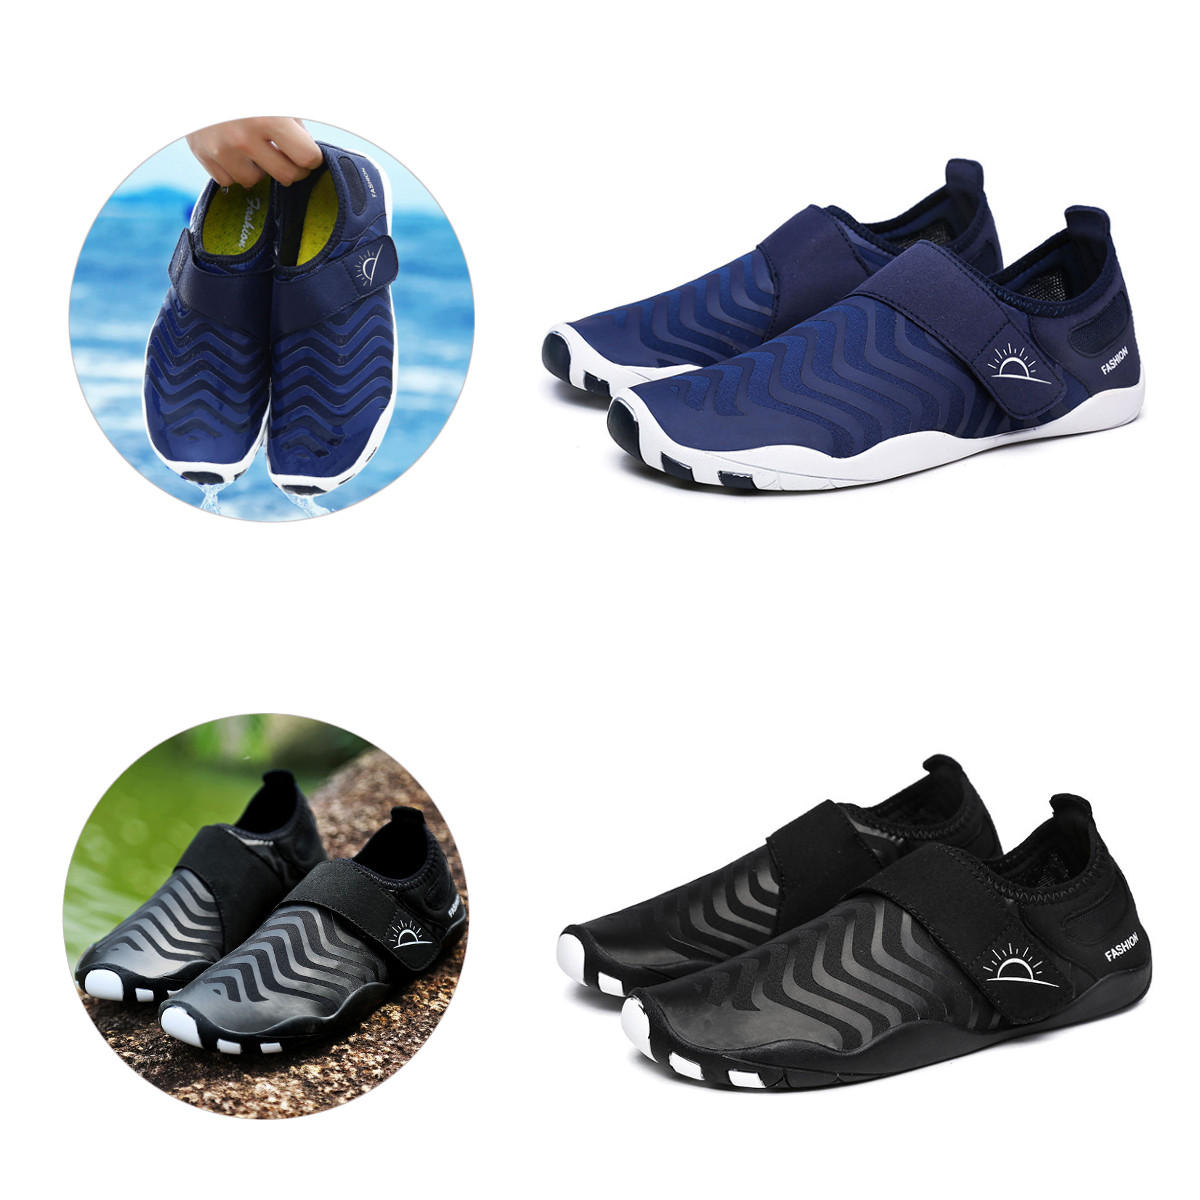 Разноцветные ультралегкие ботинки для ватинга быстро сохнут, легко надеваются, подходят для занятий спортом на открытом воздухе, плавания и йоги.